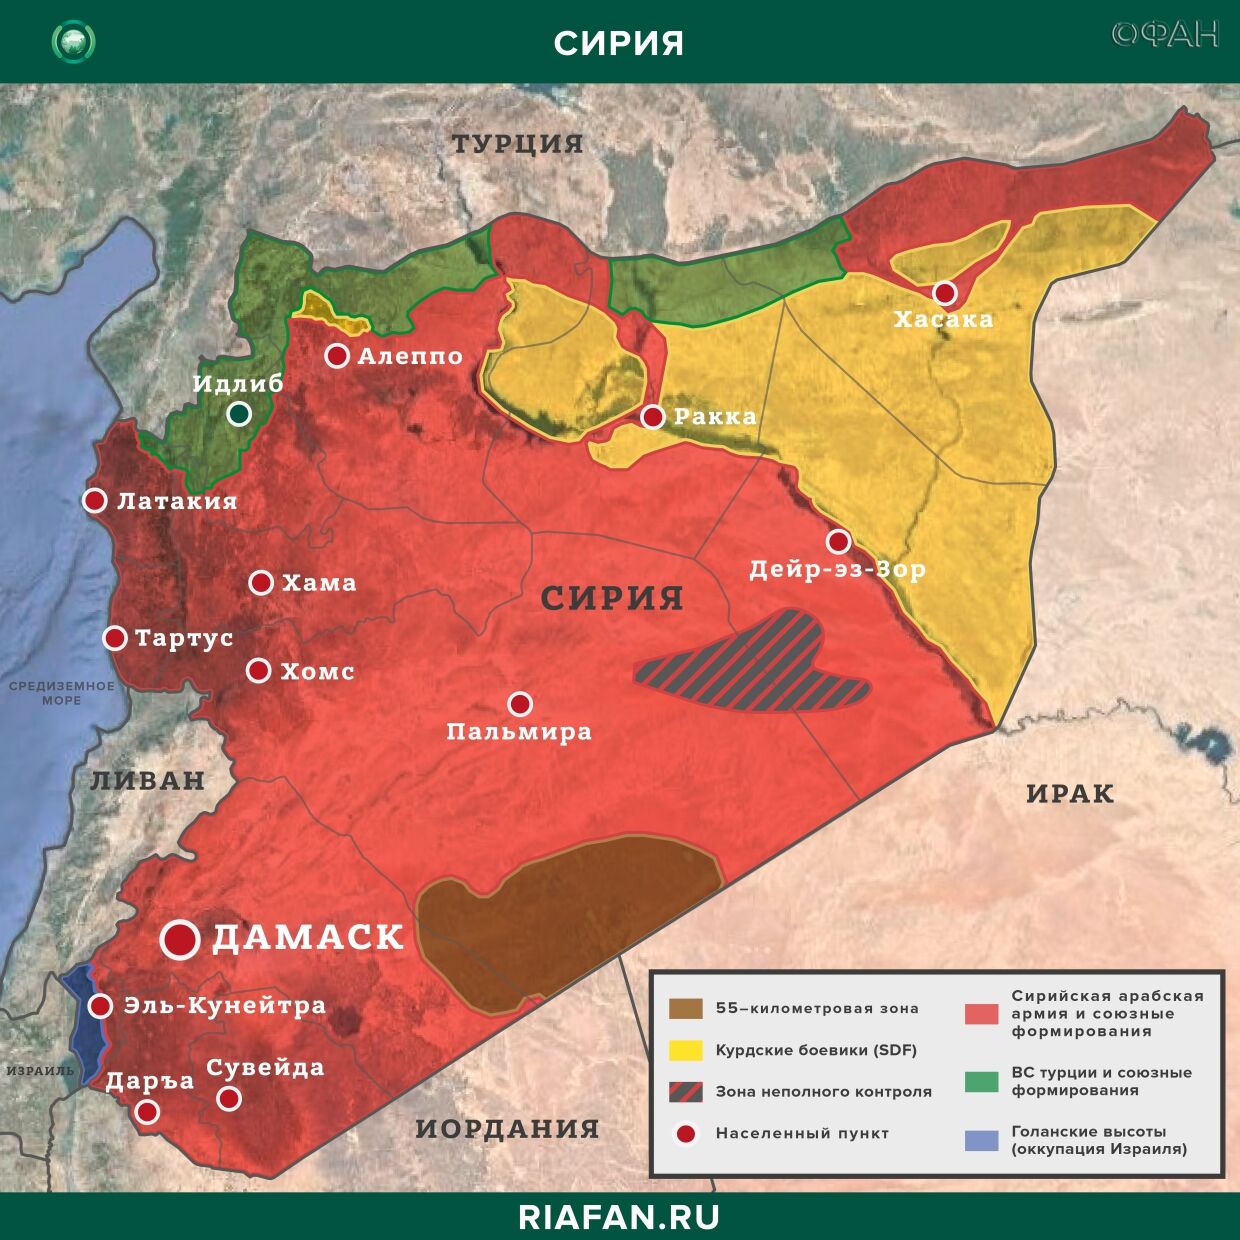 Последние новости Сирии. Сегодня 31 марта 2020 агентство, новостей, также, сообщает, Сирии, бригады, «коммандос», террористами, военной, севере, боевики, армии», национальной, боевиков, данным, создает, провокаций, будет, районе, провинции